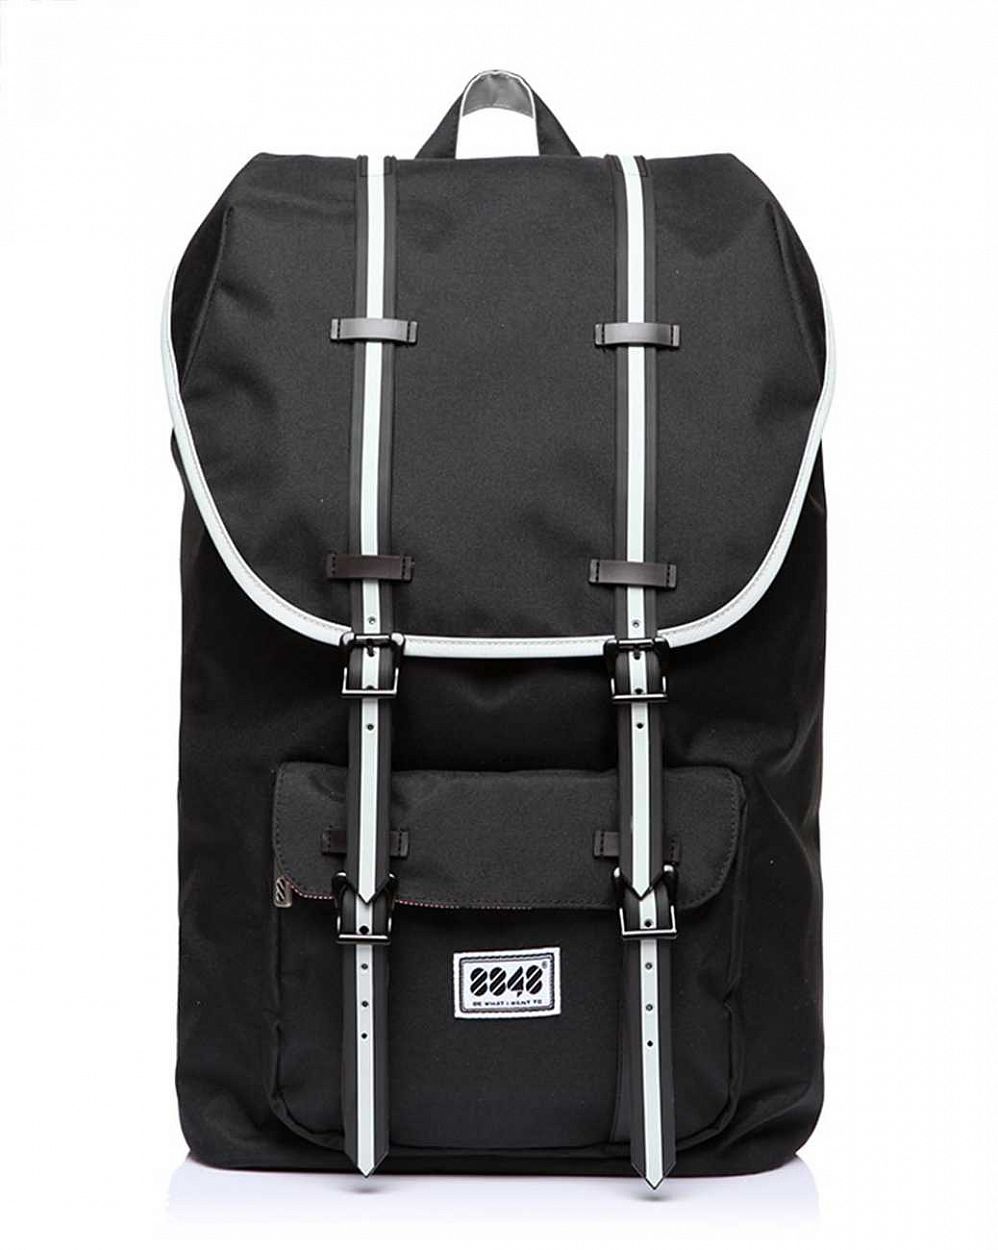 Рюкзак для путешествий с отделом для 15 ноутбука 8848 Black White отзывы